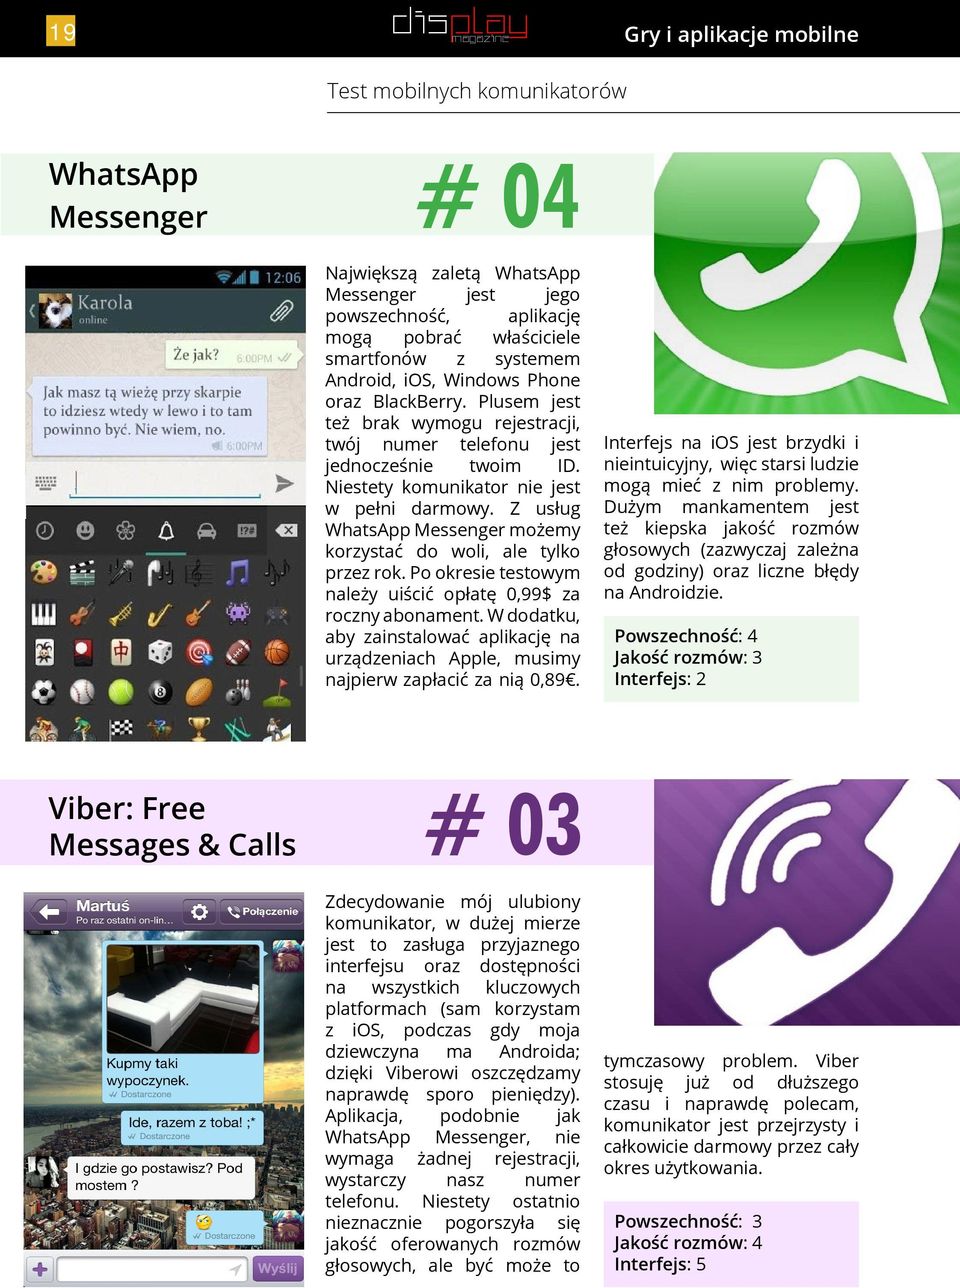 Z usług WhatsApp Messenger możemy korzystać do woli, ale tylko przez rok. Po okresie testowym należy uiścić opłatę 0,99$ za roczny abonament.